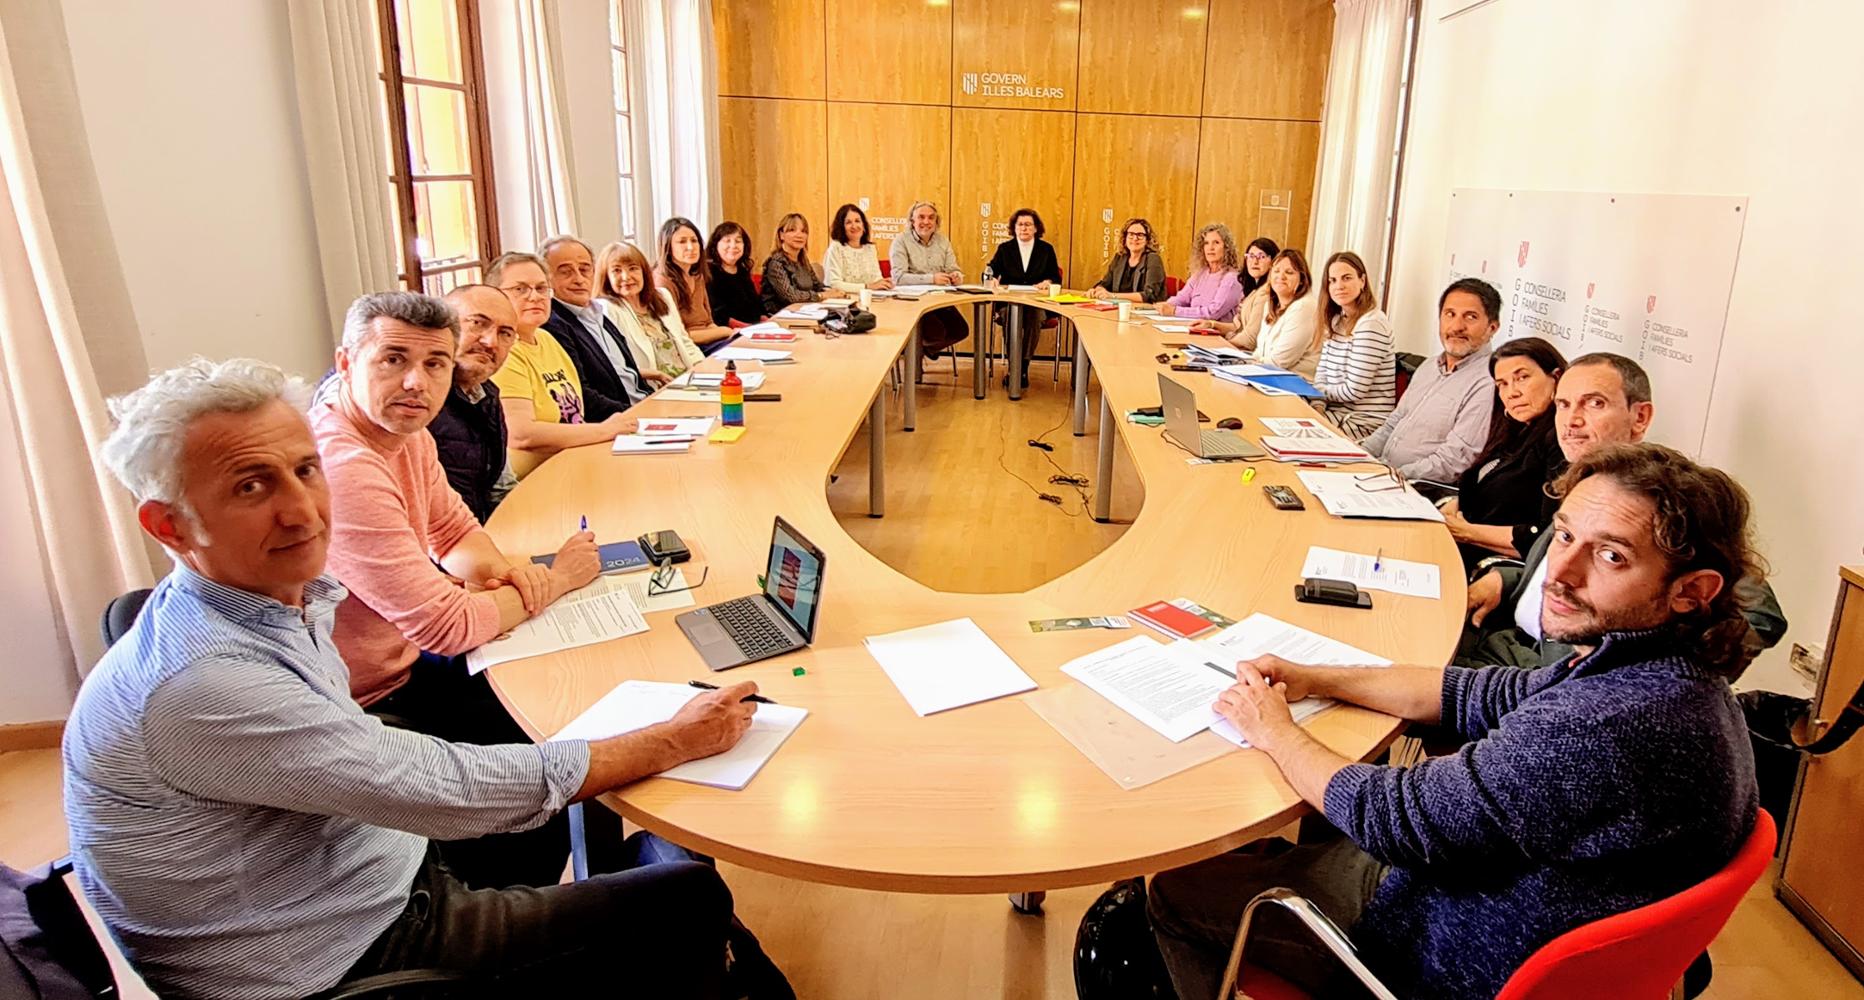 El Consejo de Infancia y Familia de las Islas Baleares se ha reunido este miércoles para analizar el Plan estratégico de atención a la infancia y adolescencia